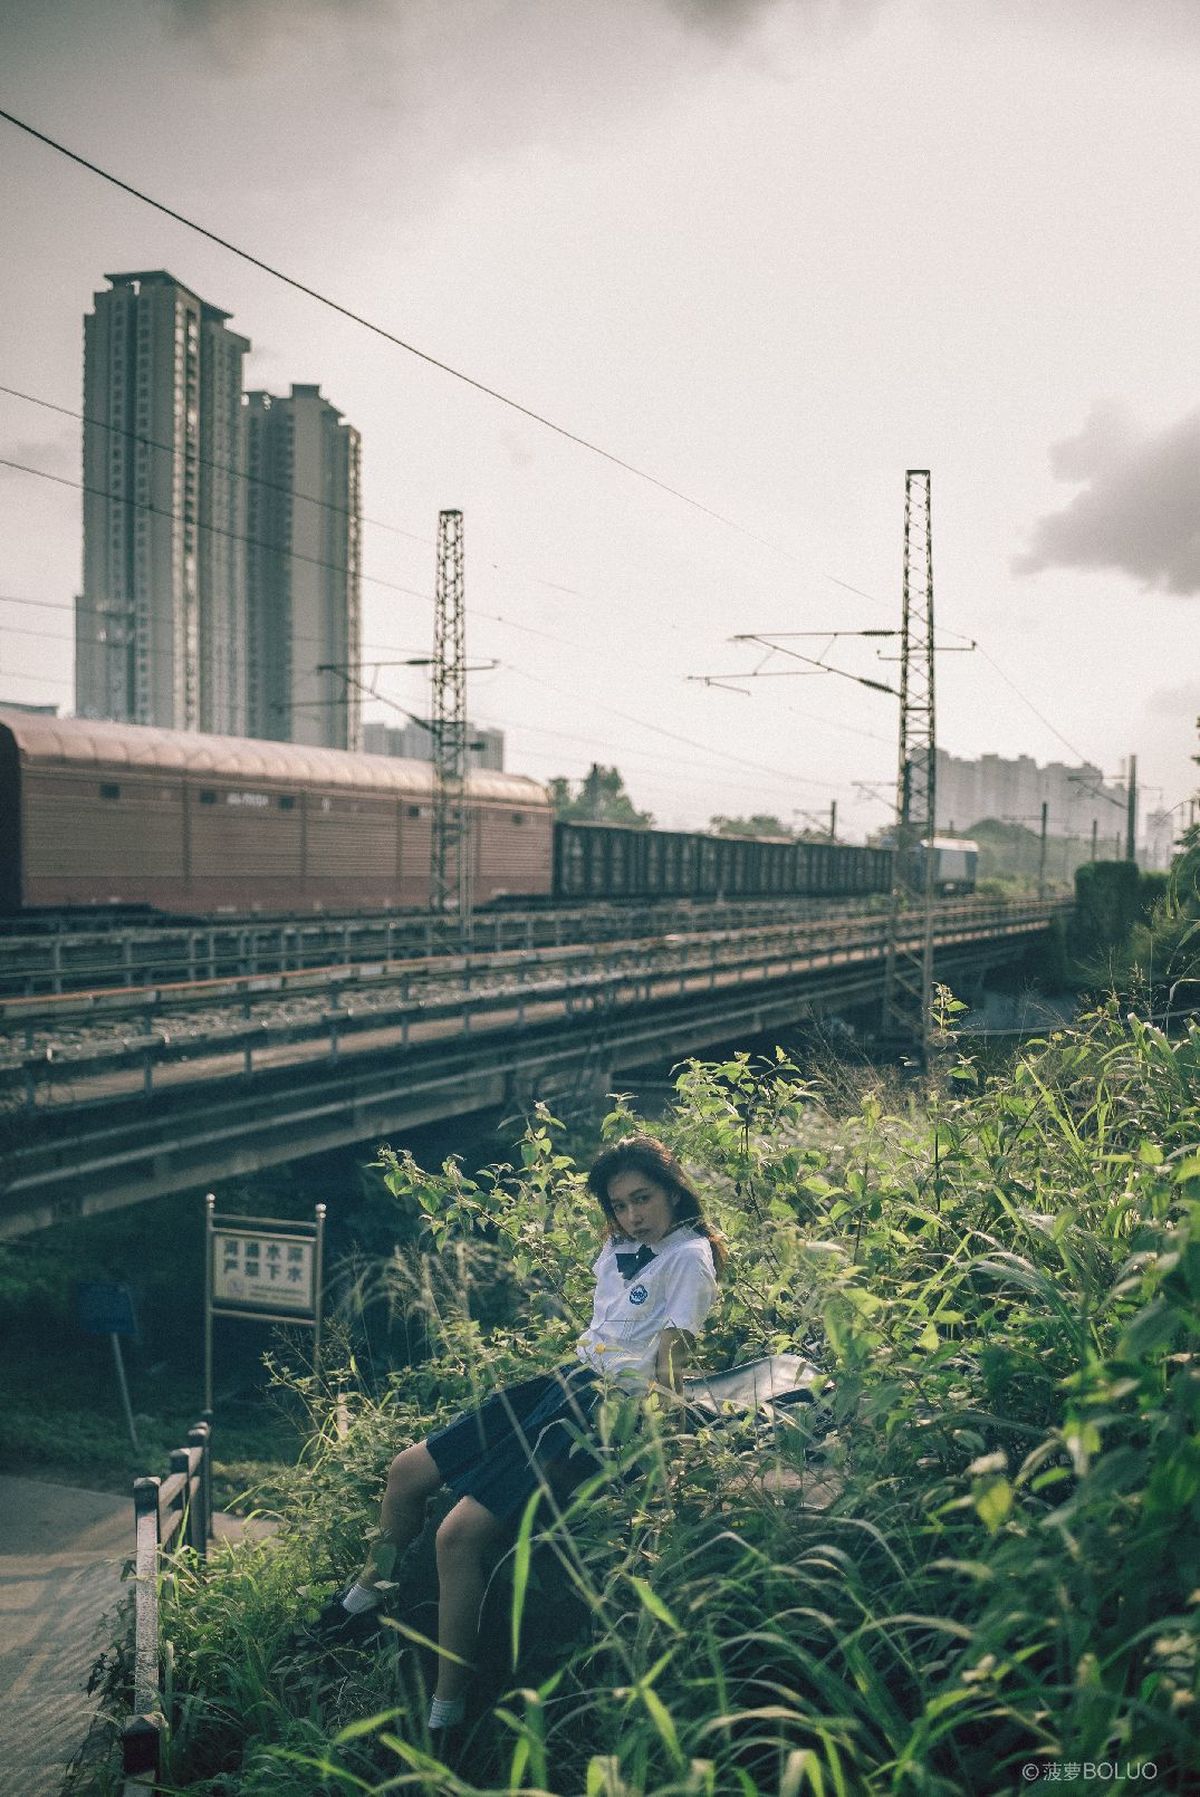 一个年轻男子和女子坐在靠近铁路轨道的草地上 火车经过。